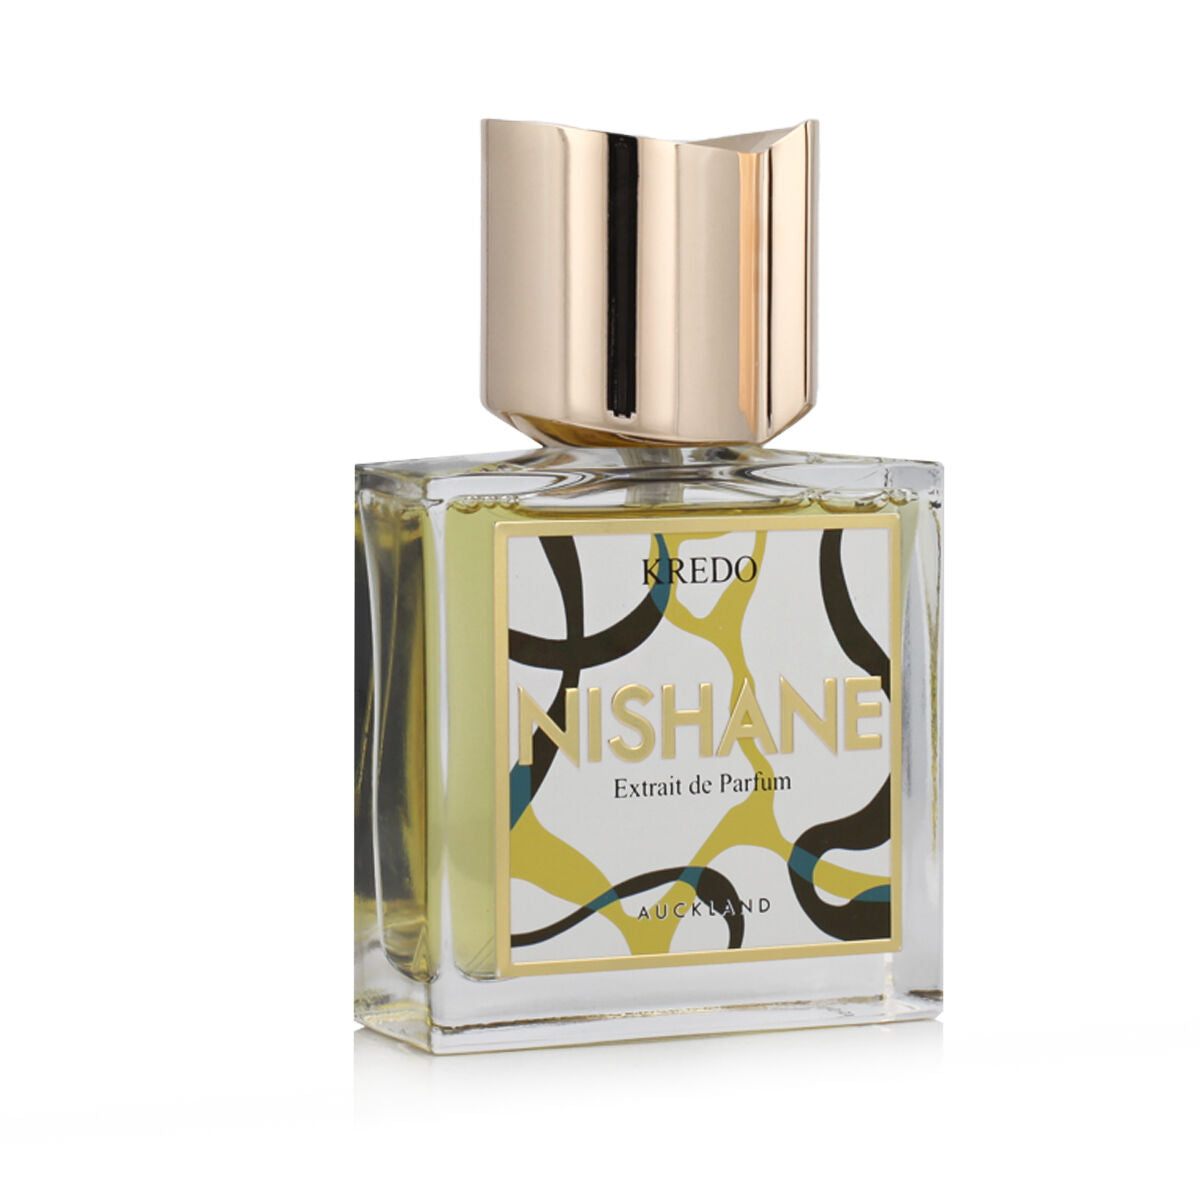 Unisex Perfume Nishane Kredo 50 ml-1